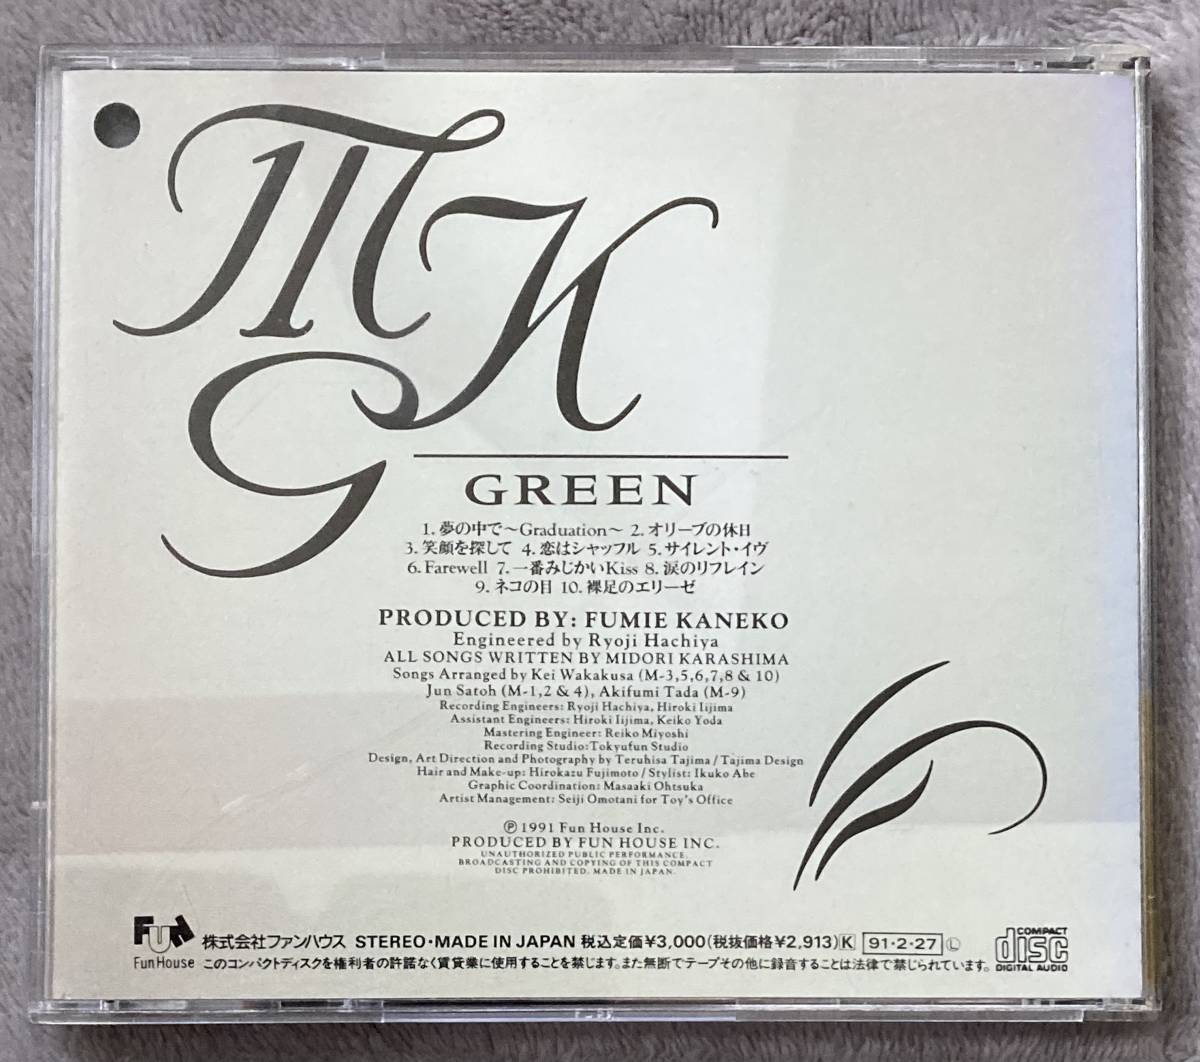 ♪【 CD USED 】 辛島美登里 Midori Karashima からしま みどり GREEN グリーン CD 全10曲収録 FunHouse 中古 ユーズド ♪_画像2